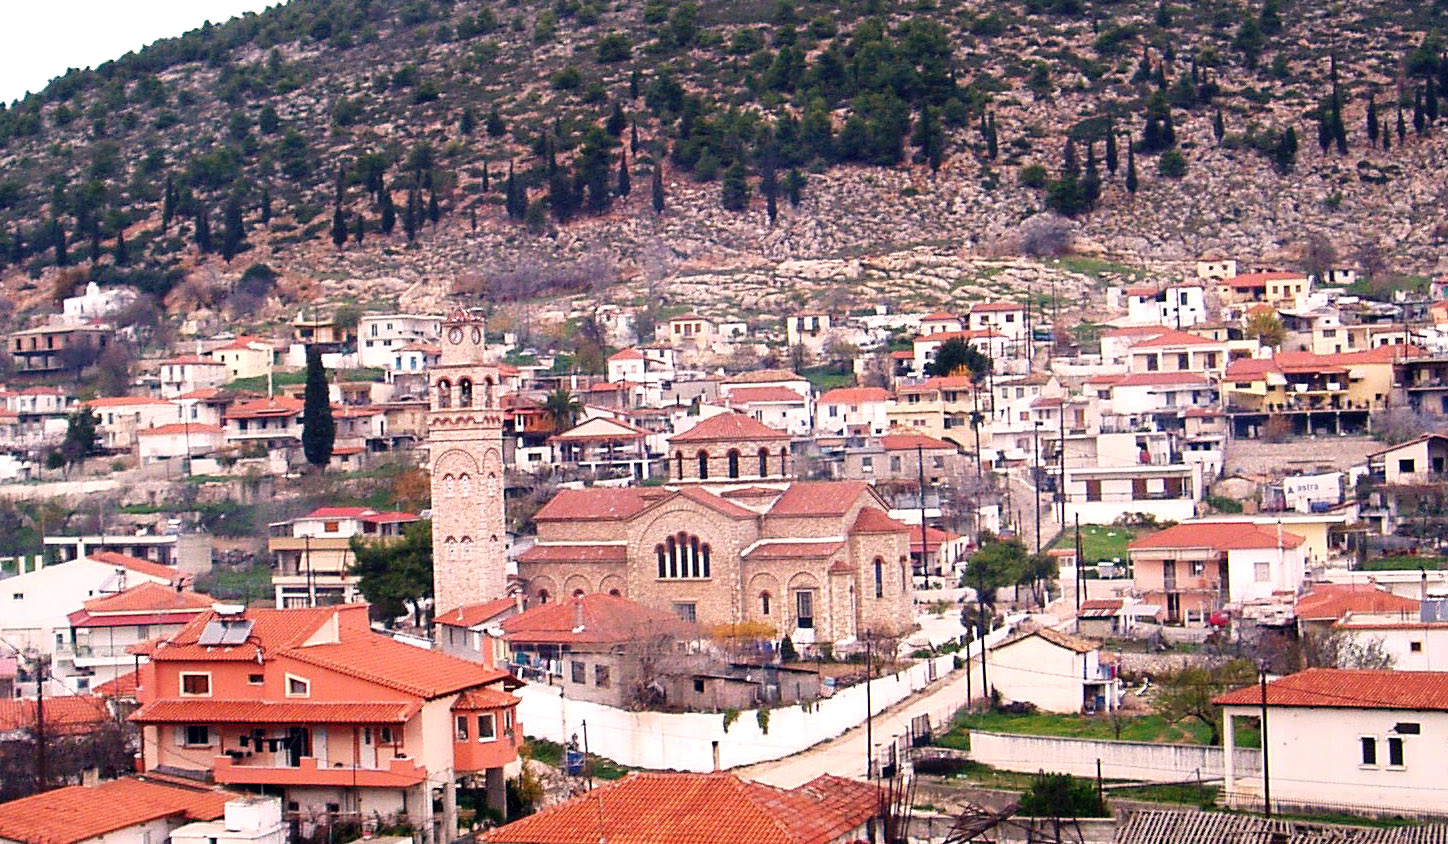 Δεν πάει το μυαλό σου: Το μοναδικό χωριό στην Πελοπόννησο με τόσα αξιόλογα εκκλησιαστικά μνημεία